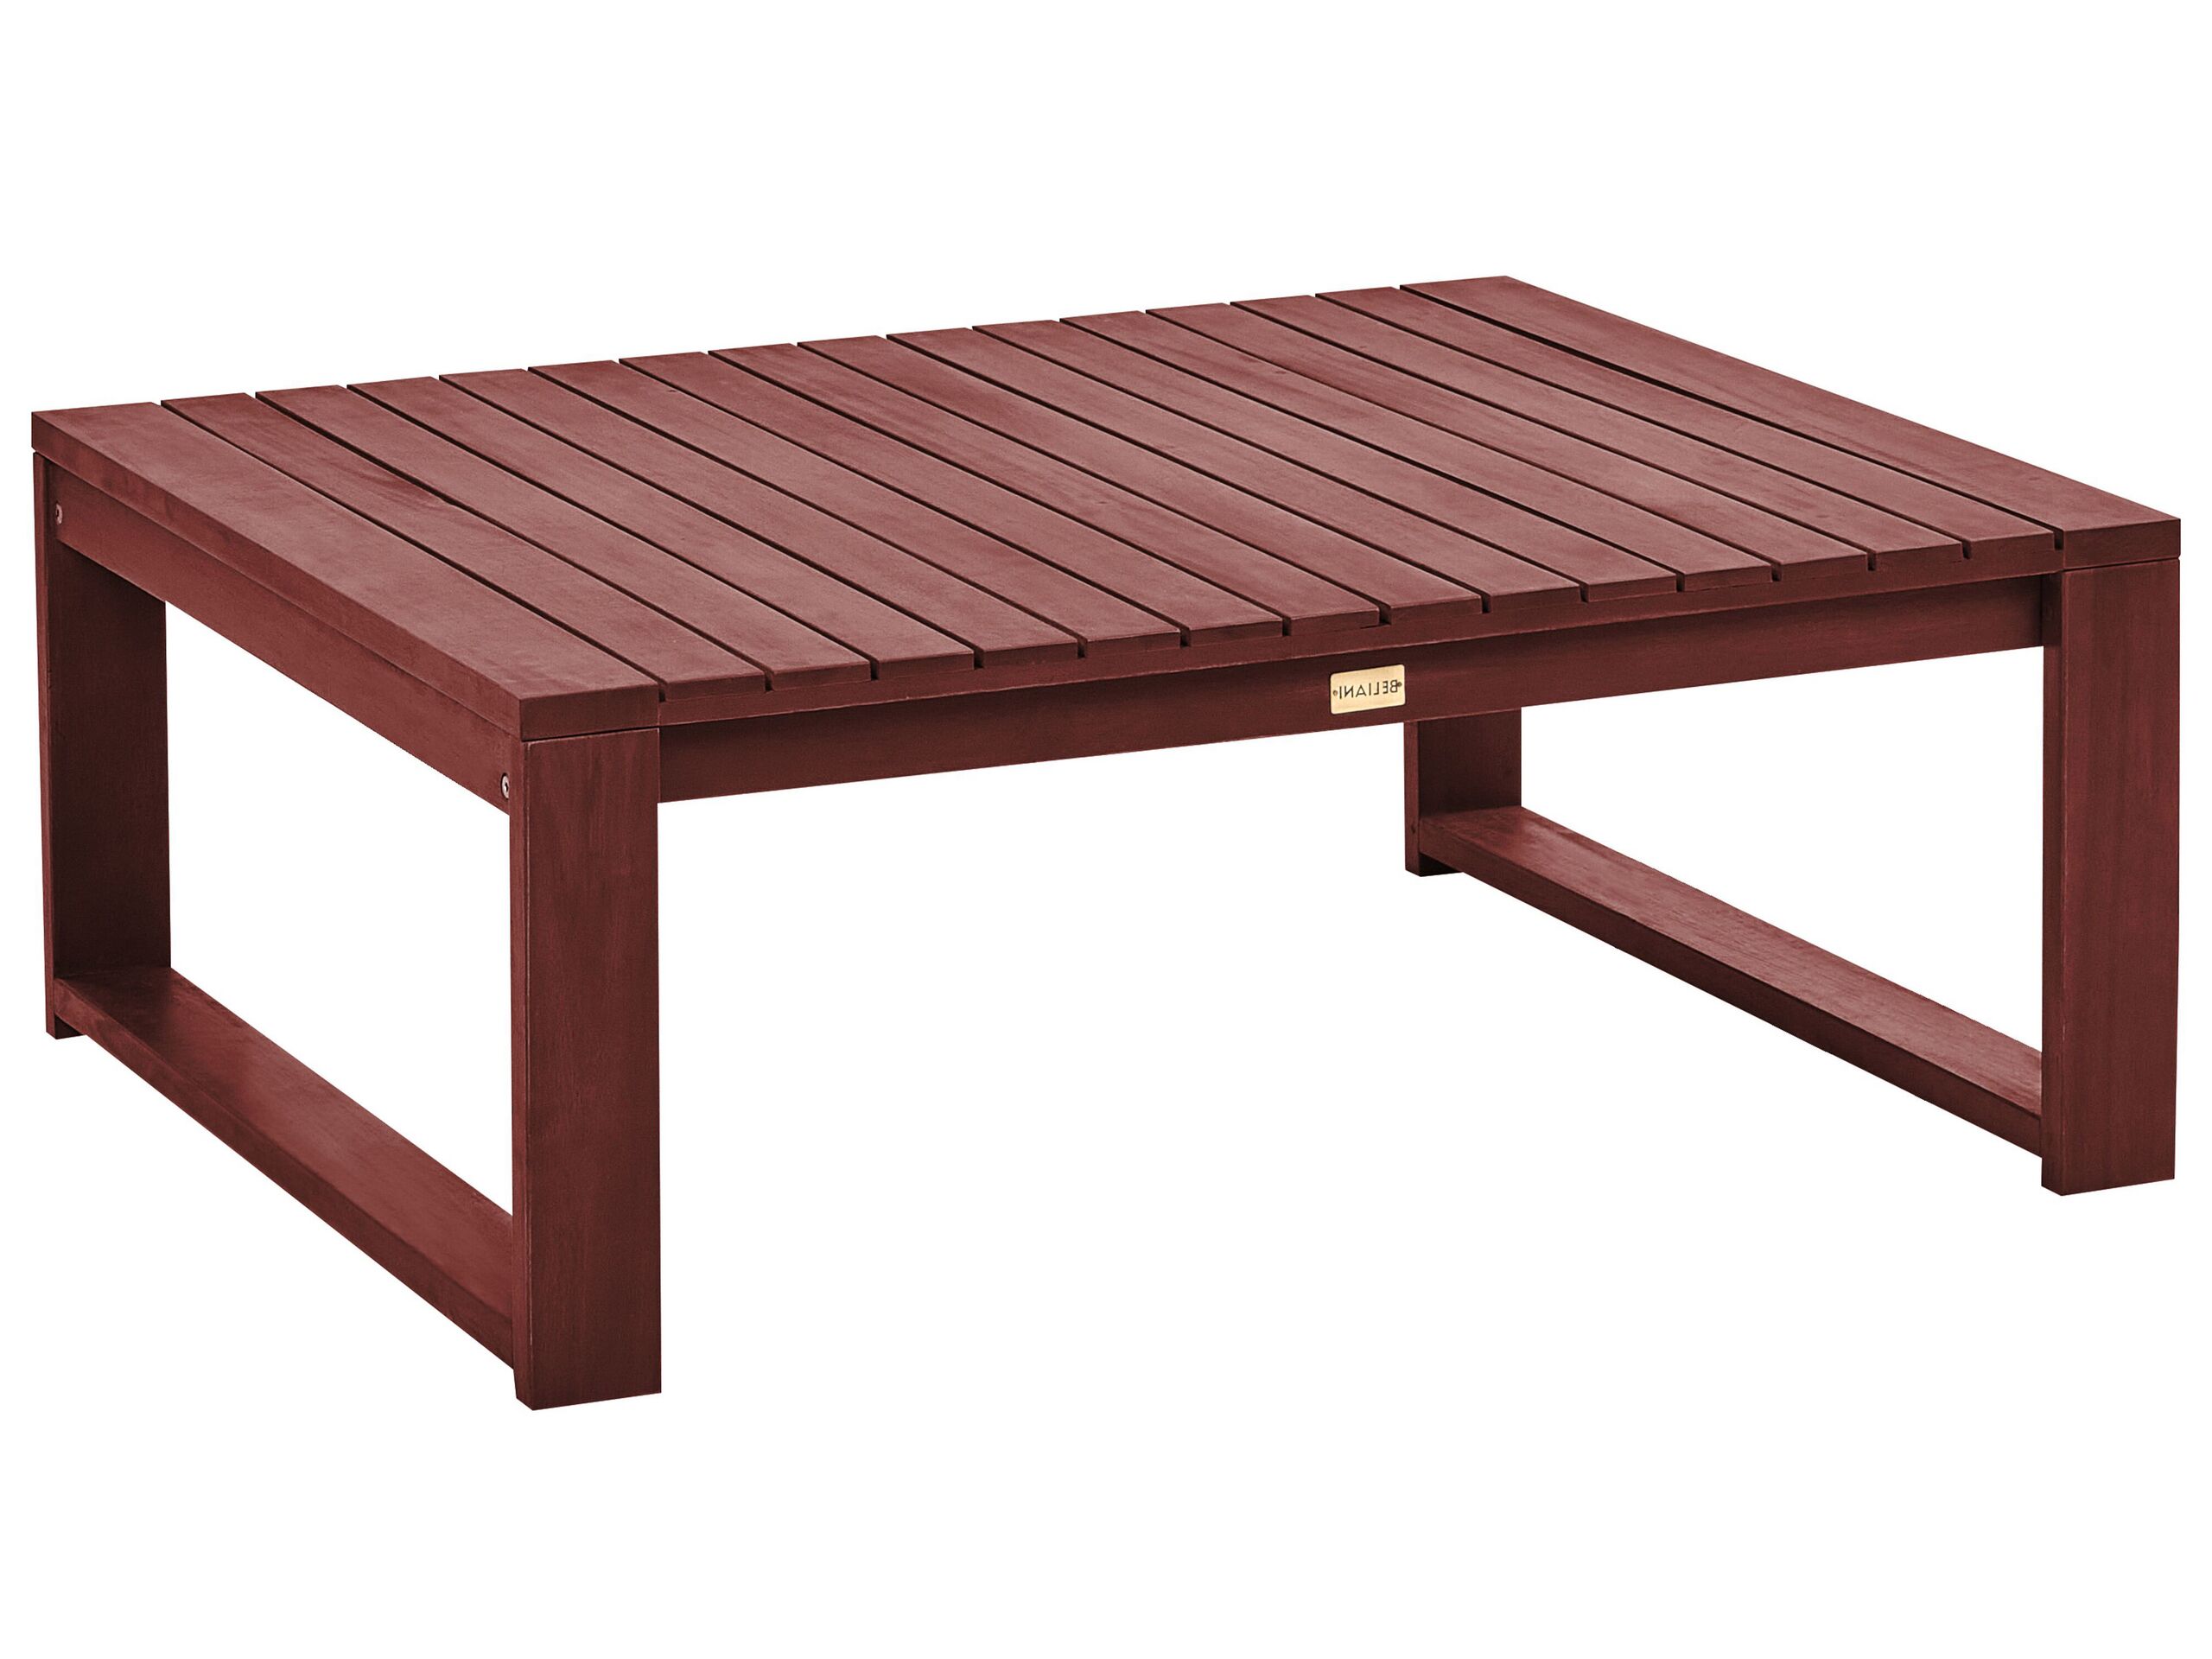 Table de jardin en bois d'acacia certifié fsc® bois foncé